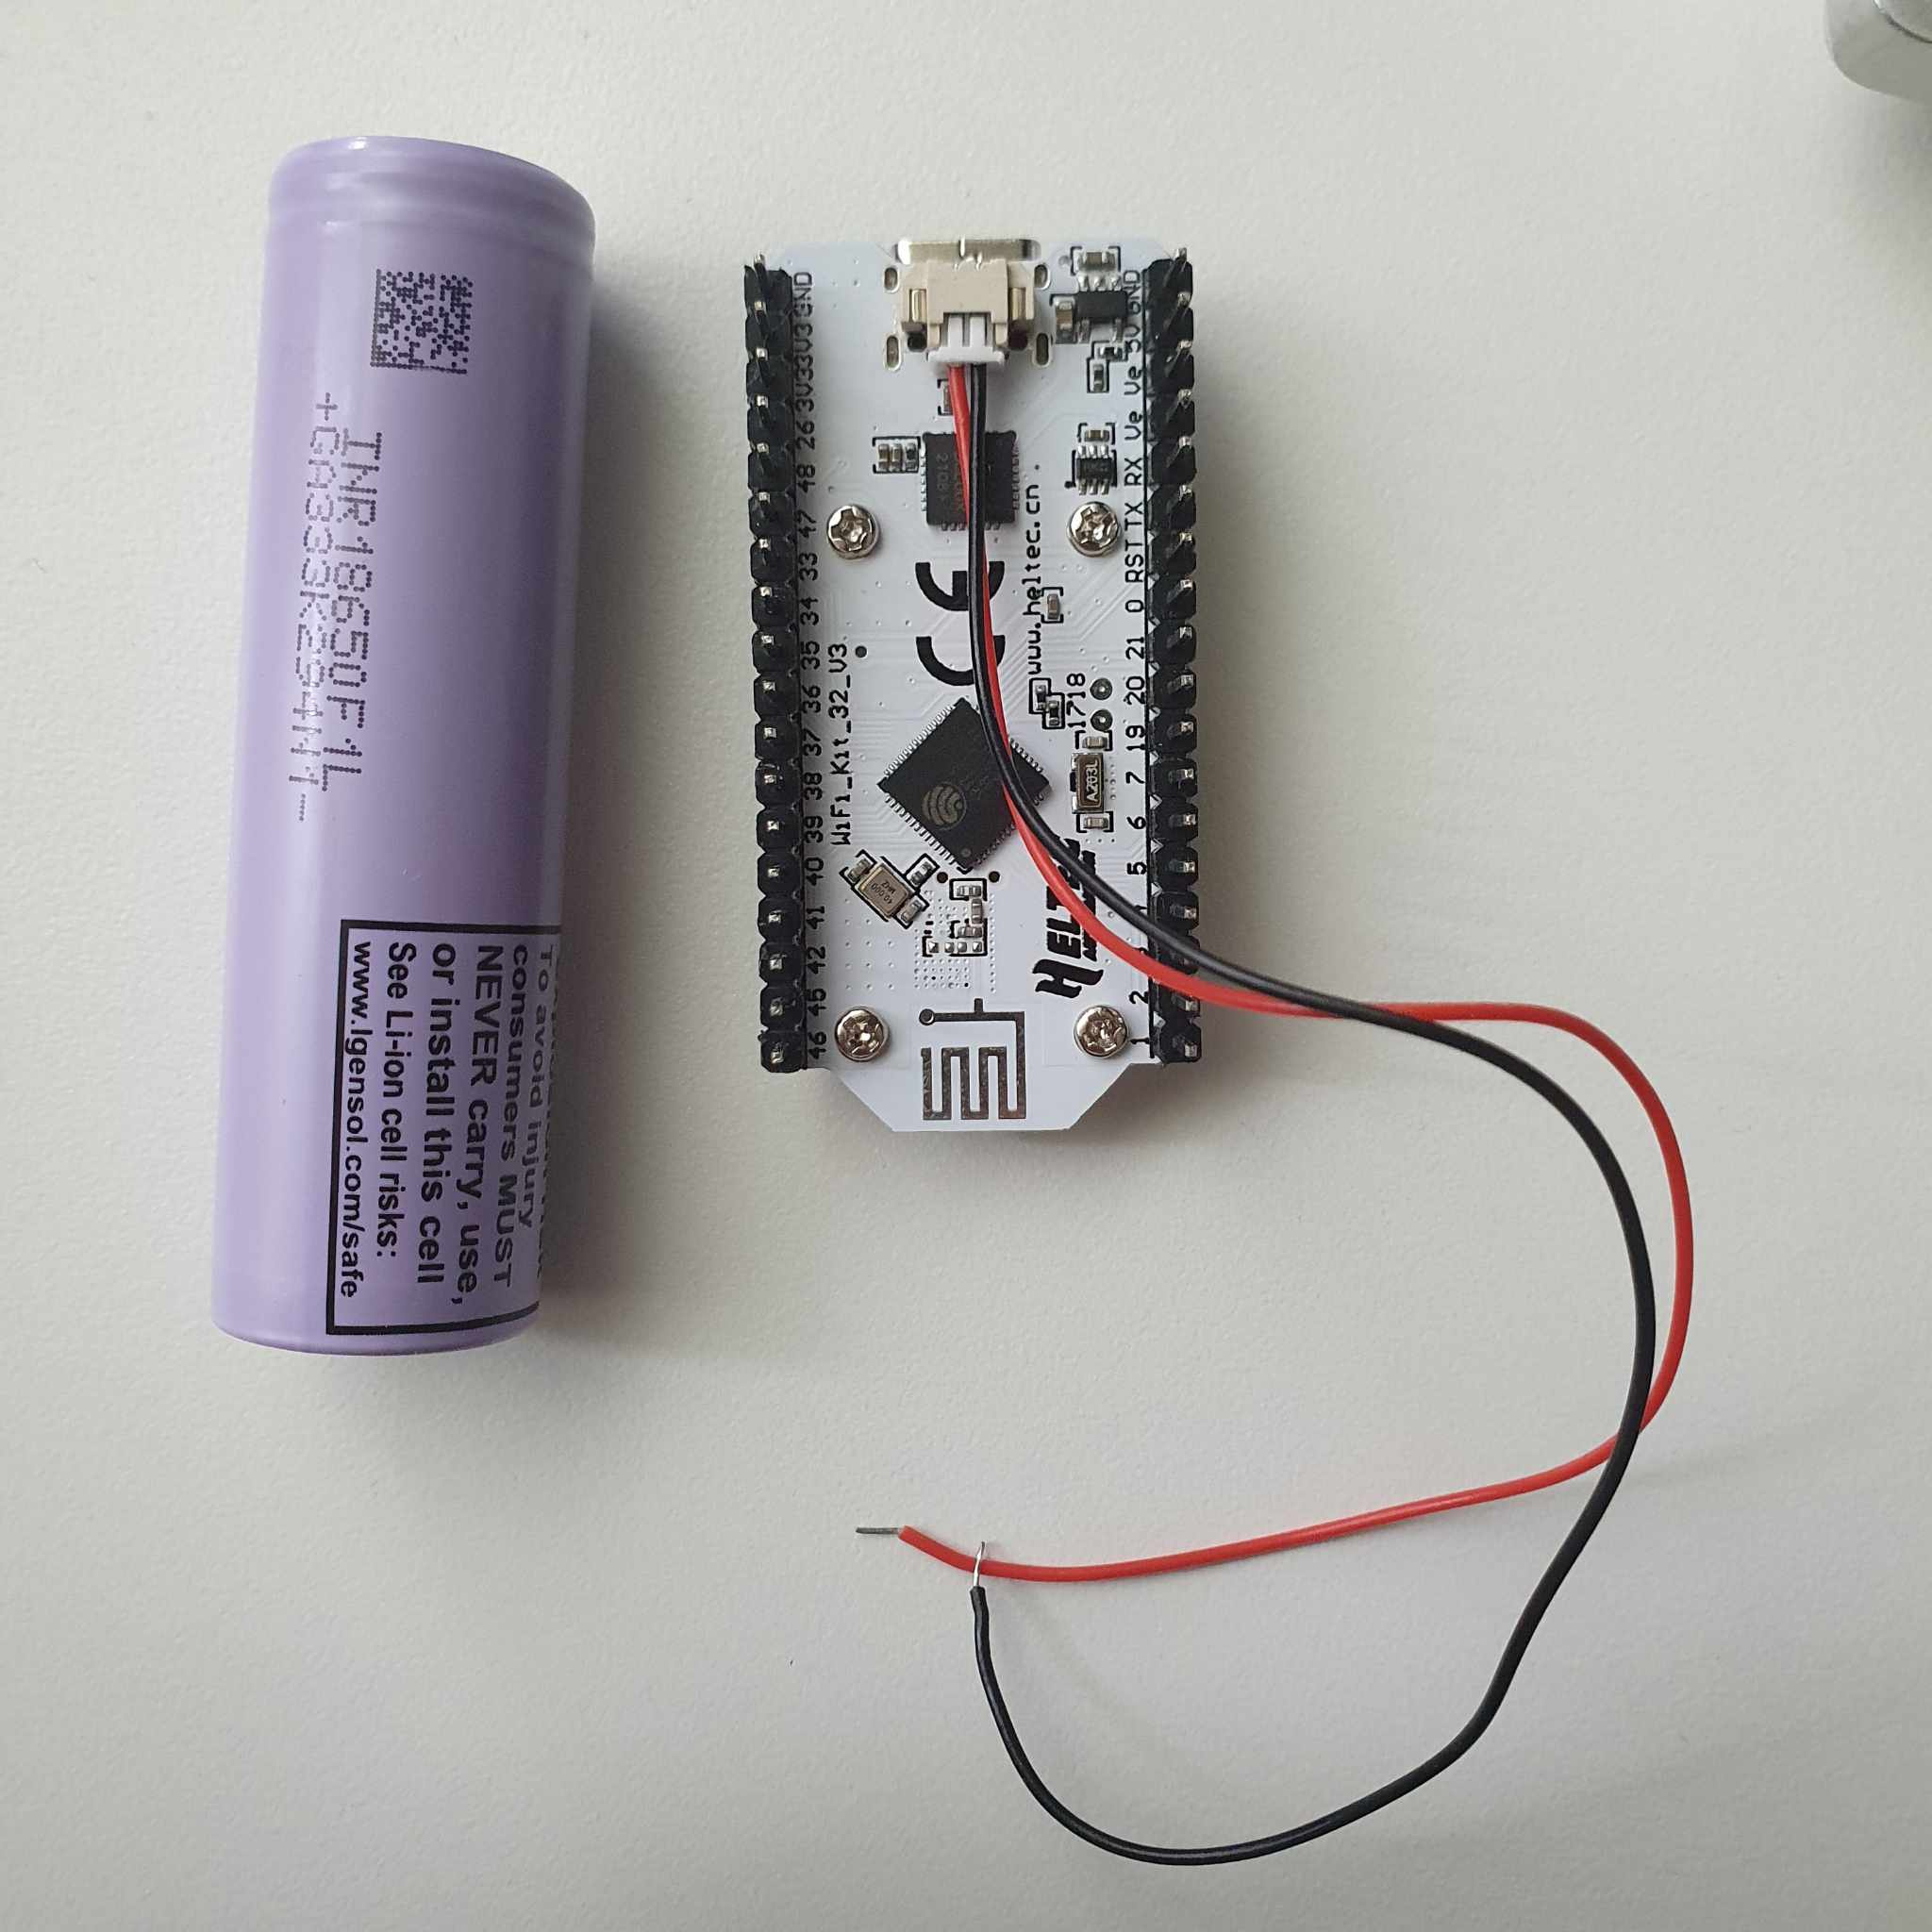 Using an 18650 Battery with TTGO ESP32 SX1276 Microcontroller